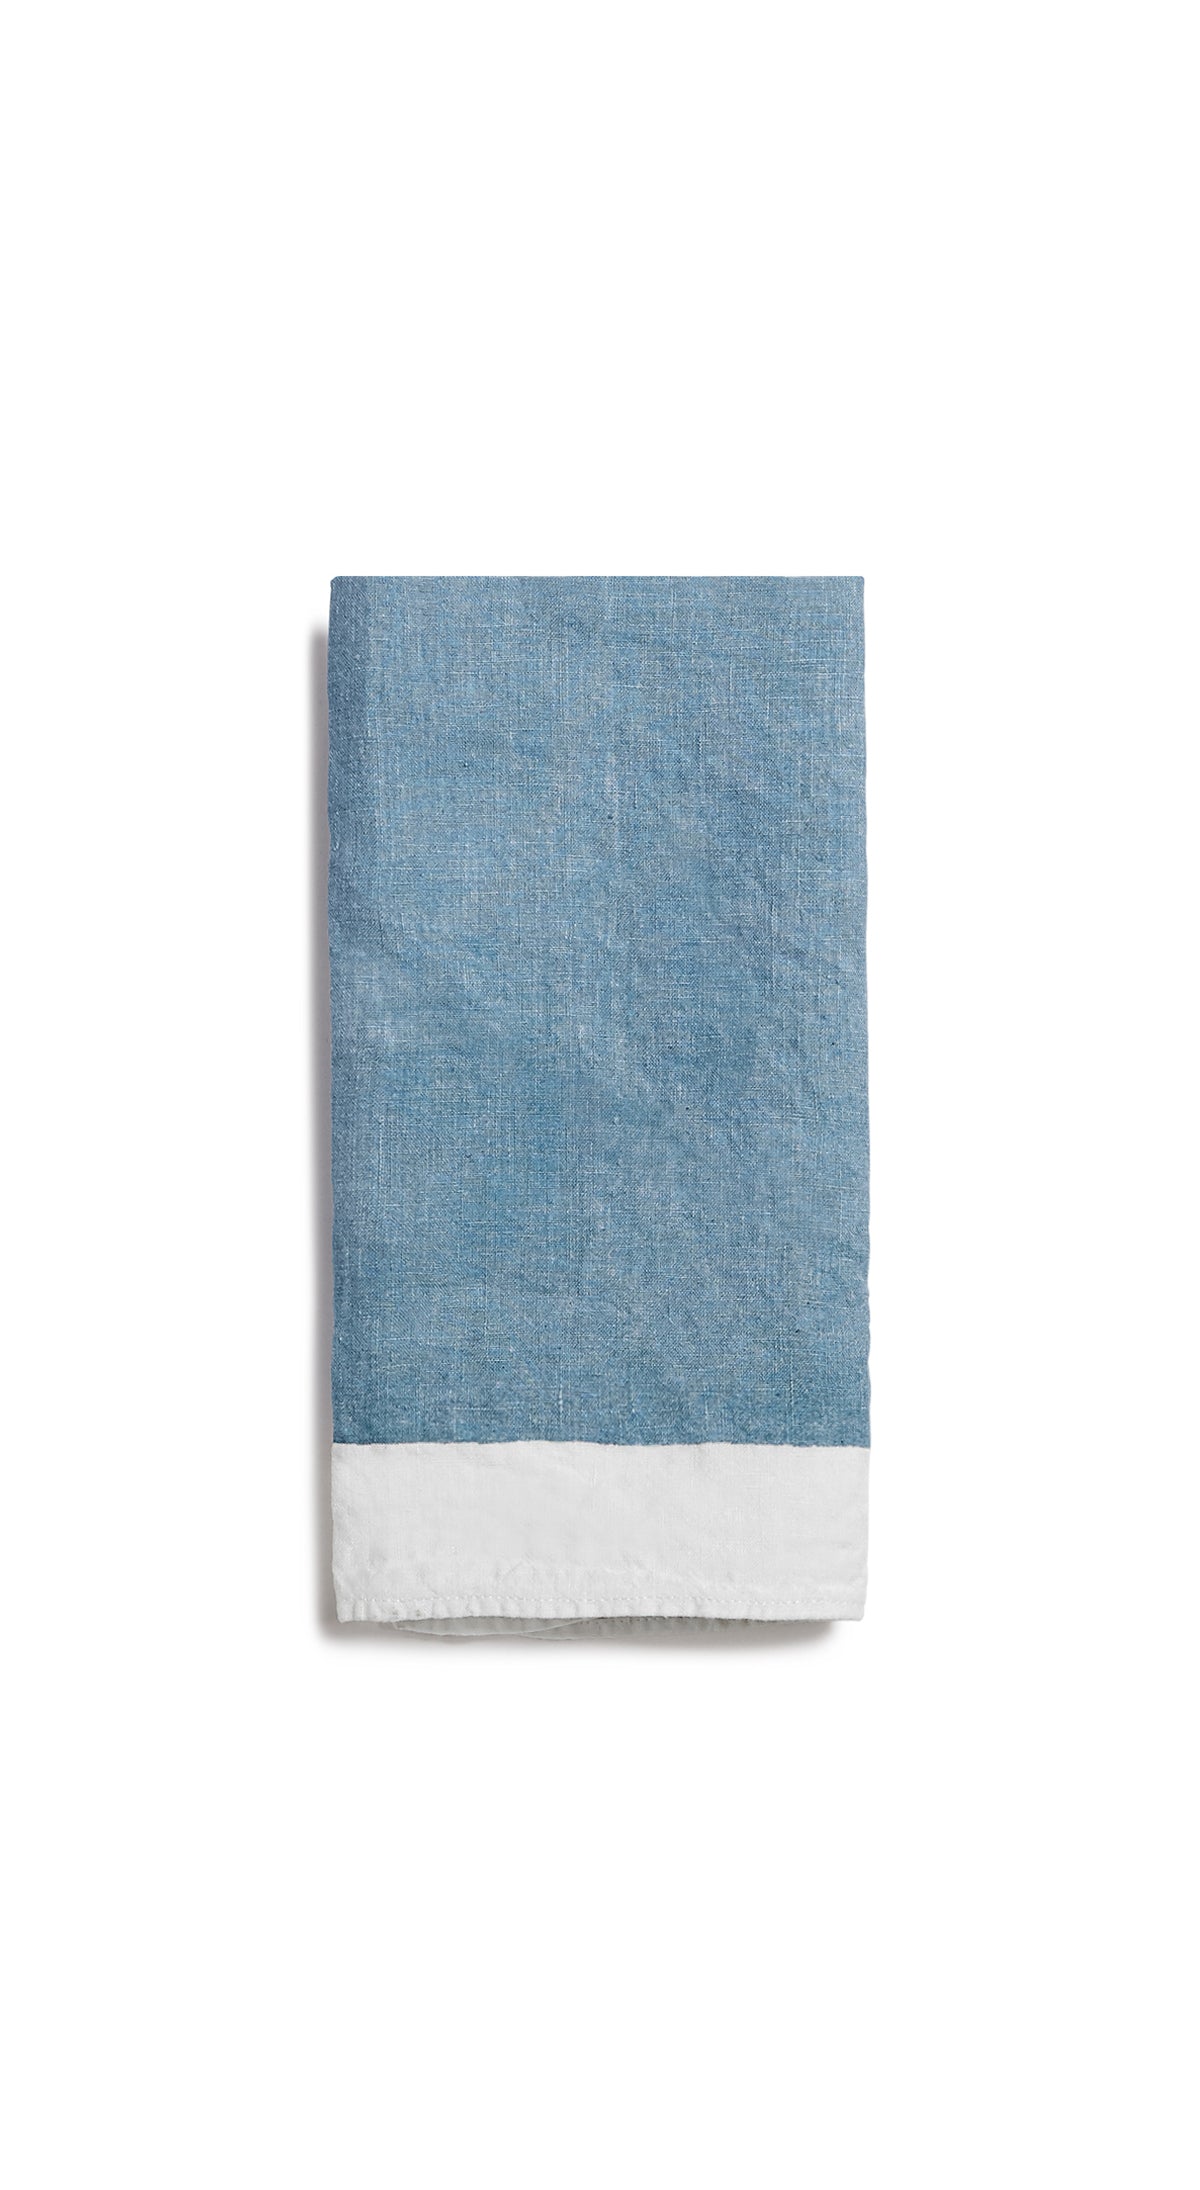 Full Field Linen Napkin in Powder Blue, 50x50cm